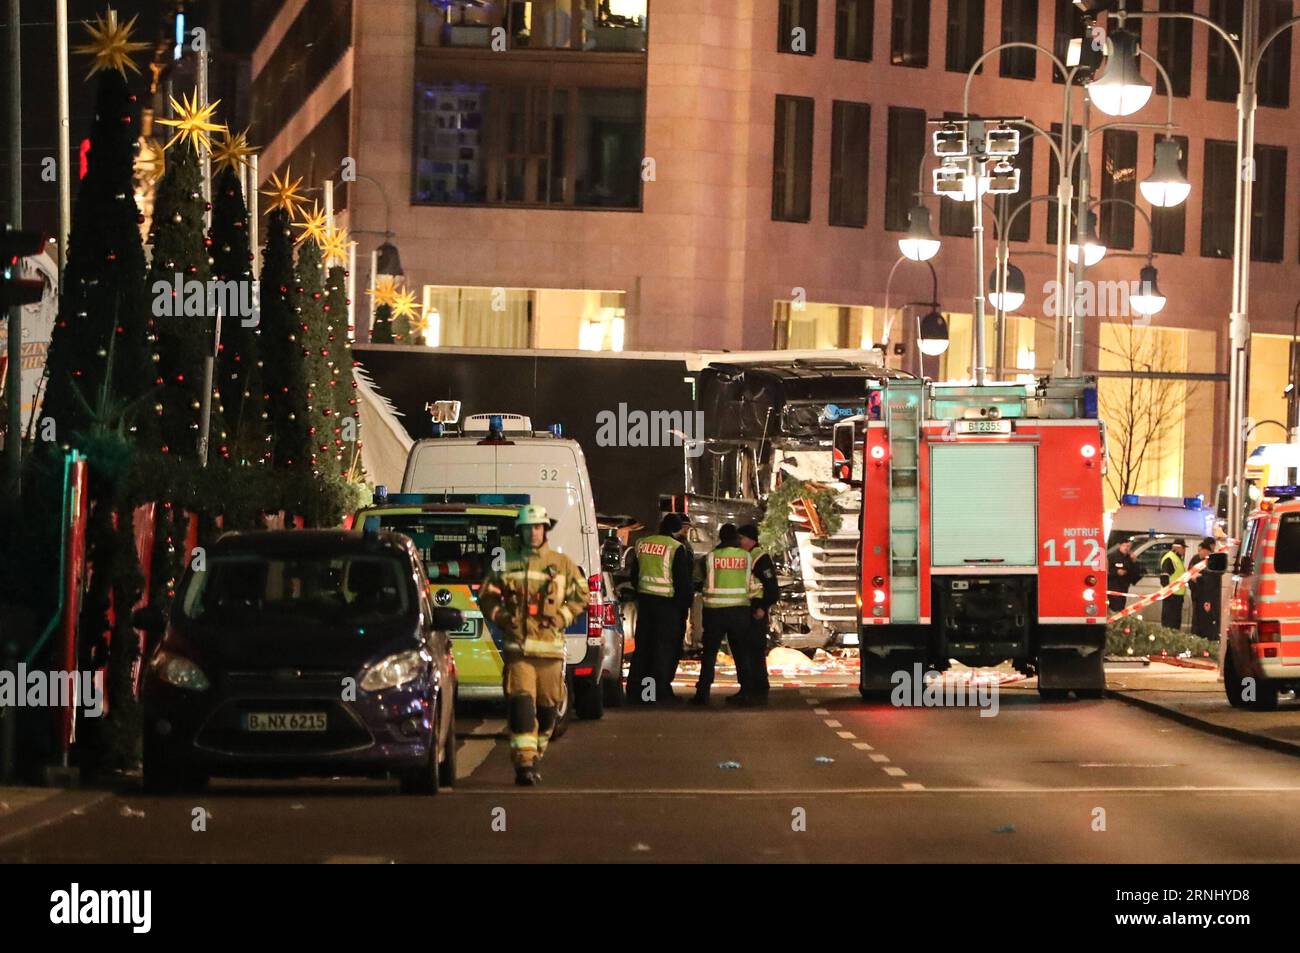 (161219) -- BERLINO, 19 dicembre 2016 -- la polizia lavora accanto al camion che ha affrettato un mercatino di natale a Berlino, in Germania, 19 dicembre 2016. Un camion ha arato in una folla in un mercatino di Natale a Berlino lunedì sera, uccidendo nove persone e ferendone altre 50, la polizia di Berlino ha annunciato. ) GERMANIA-BERLINO-INCIDENTE AUTOCARRO ShanxYuqi PUBLICATIONxNOTxINxCHN Foto Stock